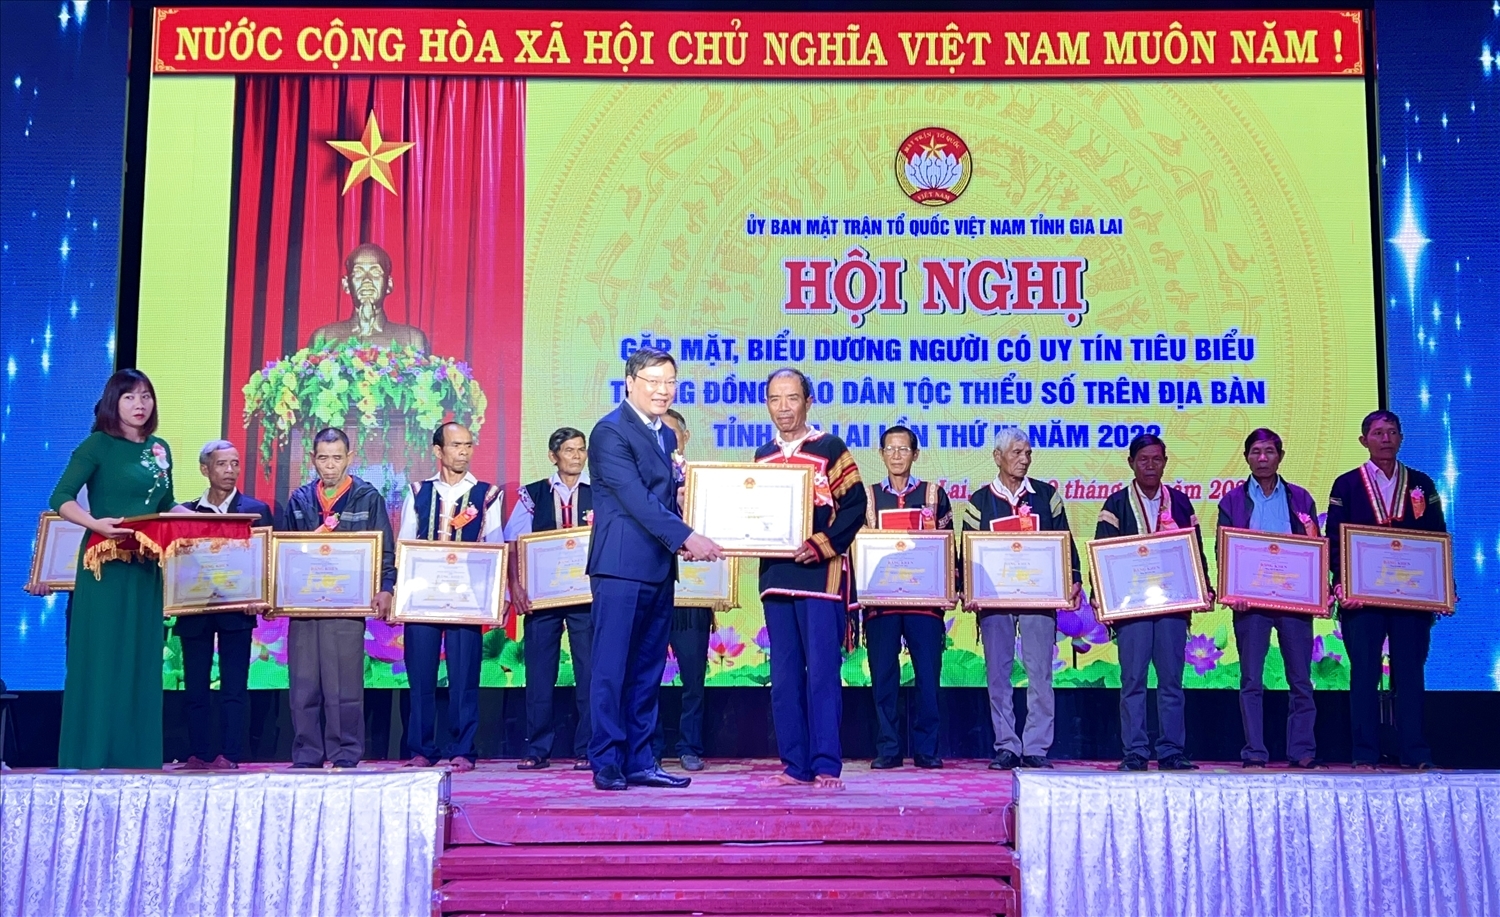 Chủ tịch UBND tỉnh Gia Lai tặng Bằng khen cho những Người có uy tín tiêu biểu trong đồng bào DTTS tại Hội nghị gặp mặt, biểu dương NCUT năm 2022